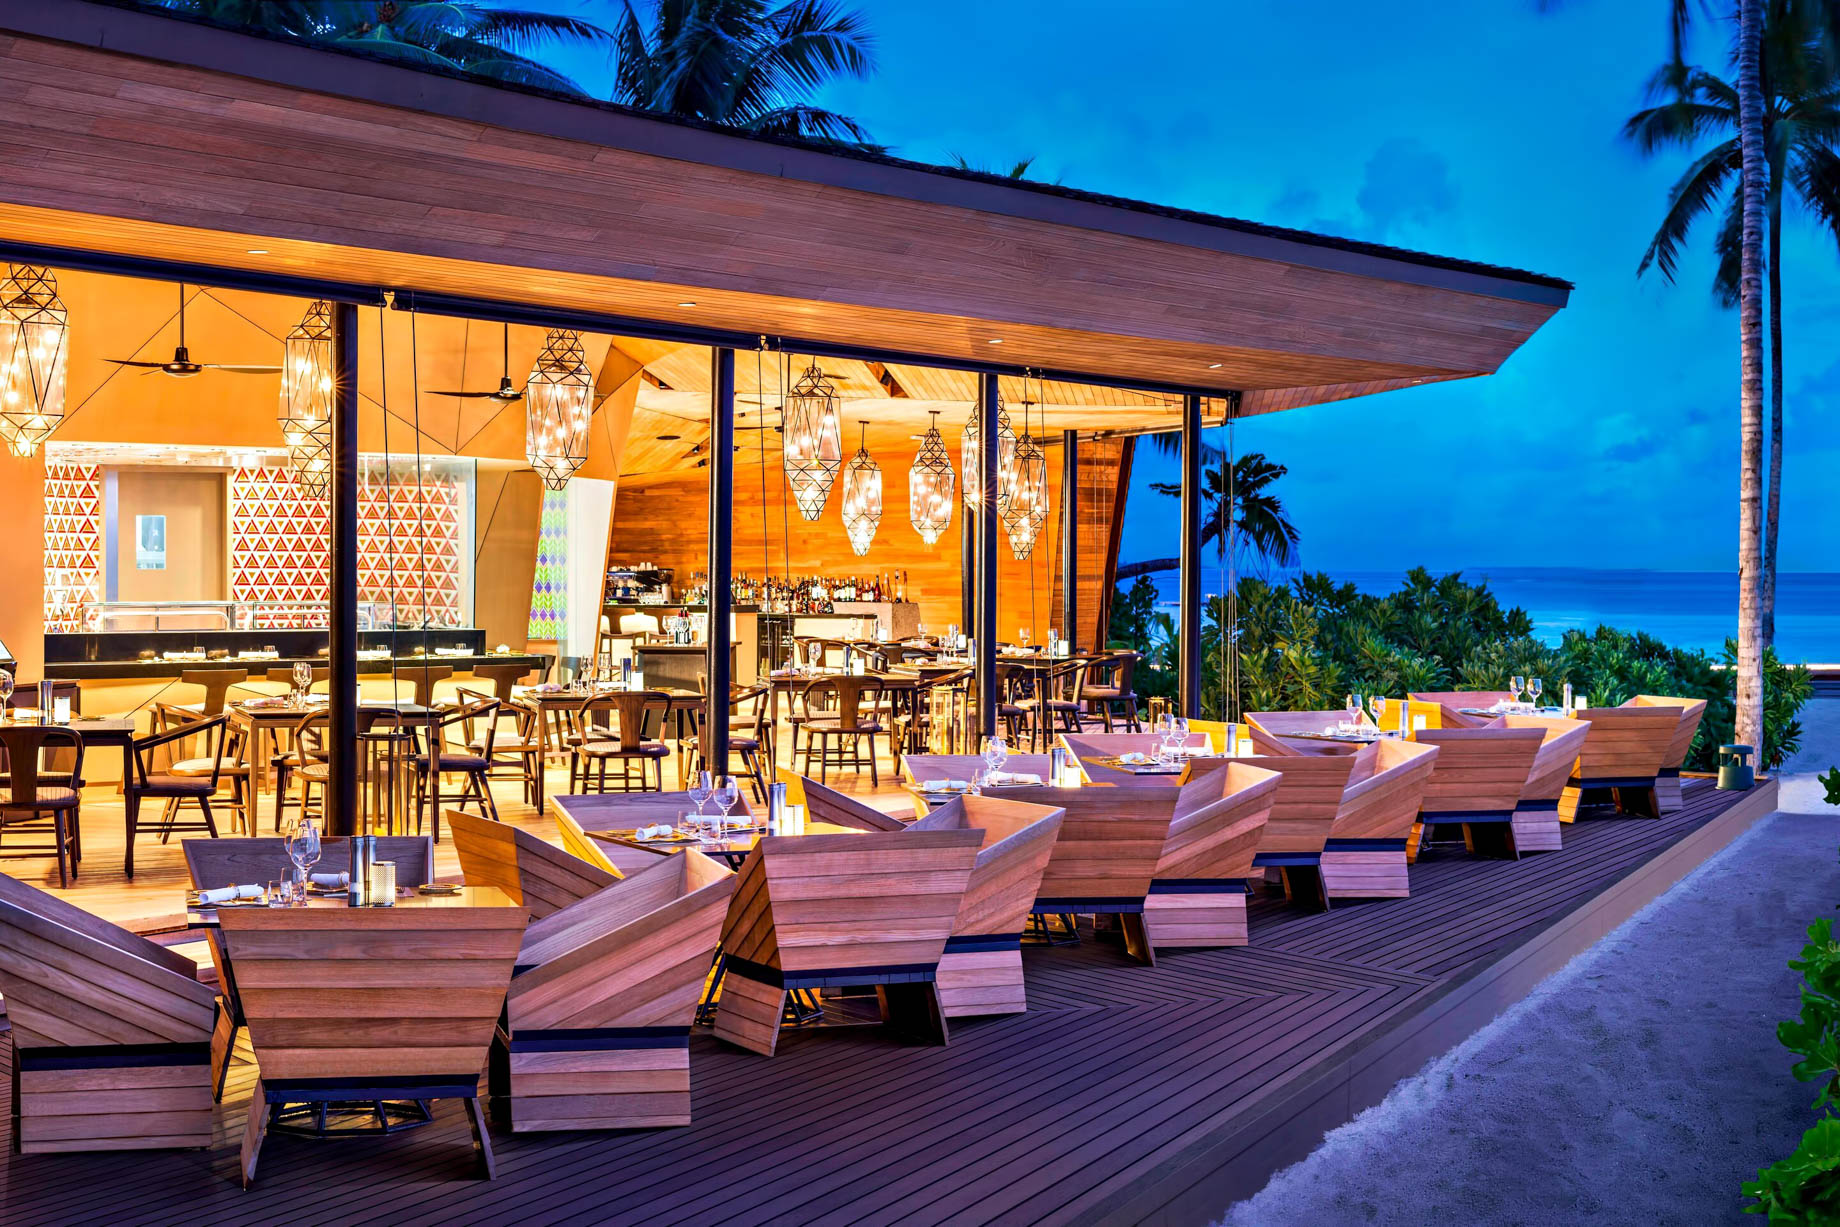 The St. Regis Maldives Vommuli Resort – Dhaalu Atoll, Maldives – Orientale Restaurant Exterior